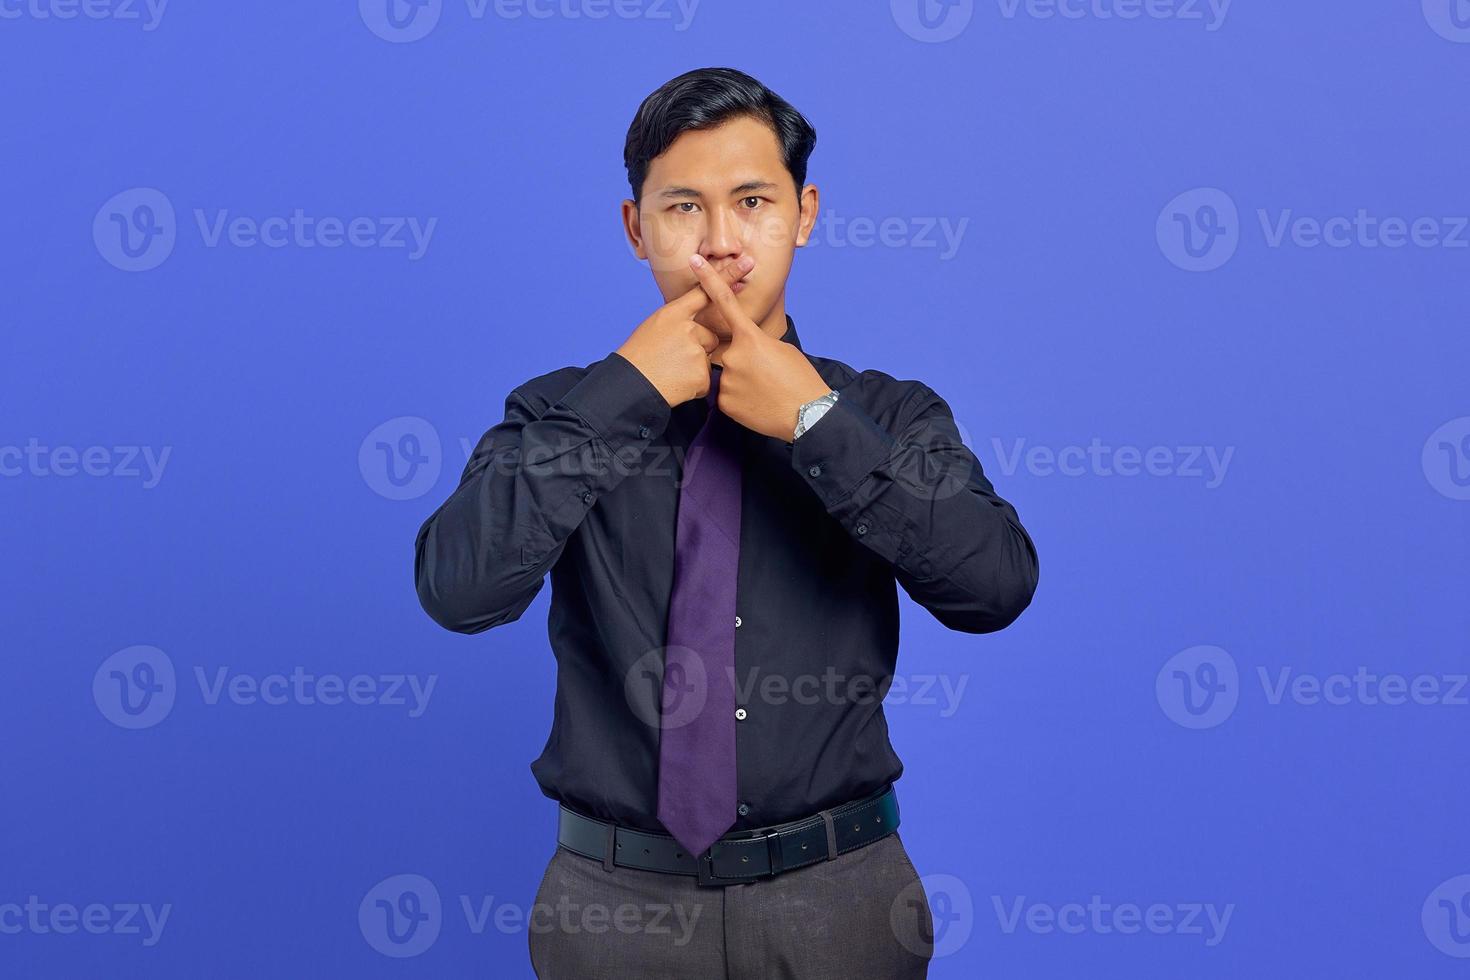 jovem empresário bonito cruzou o dedo e mostrou gesto de recusa no fundo roxo foto